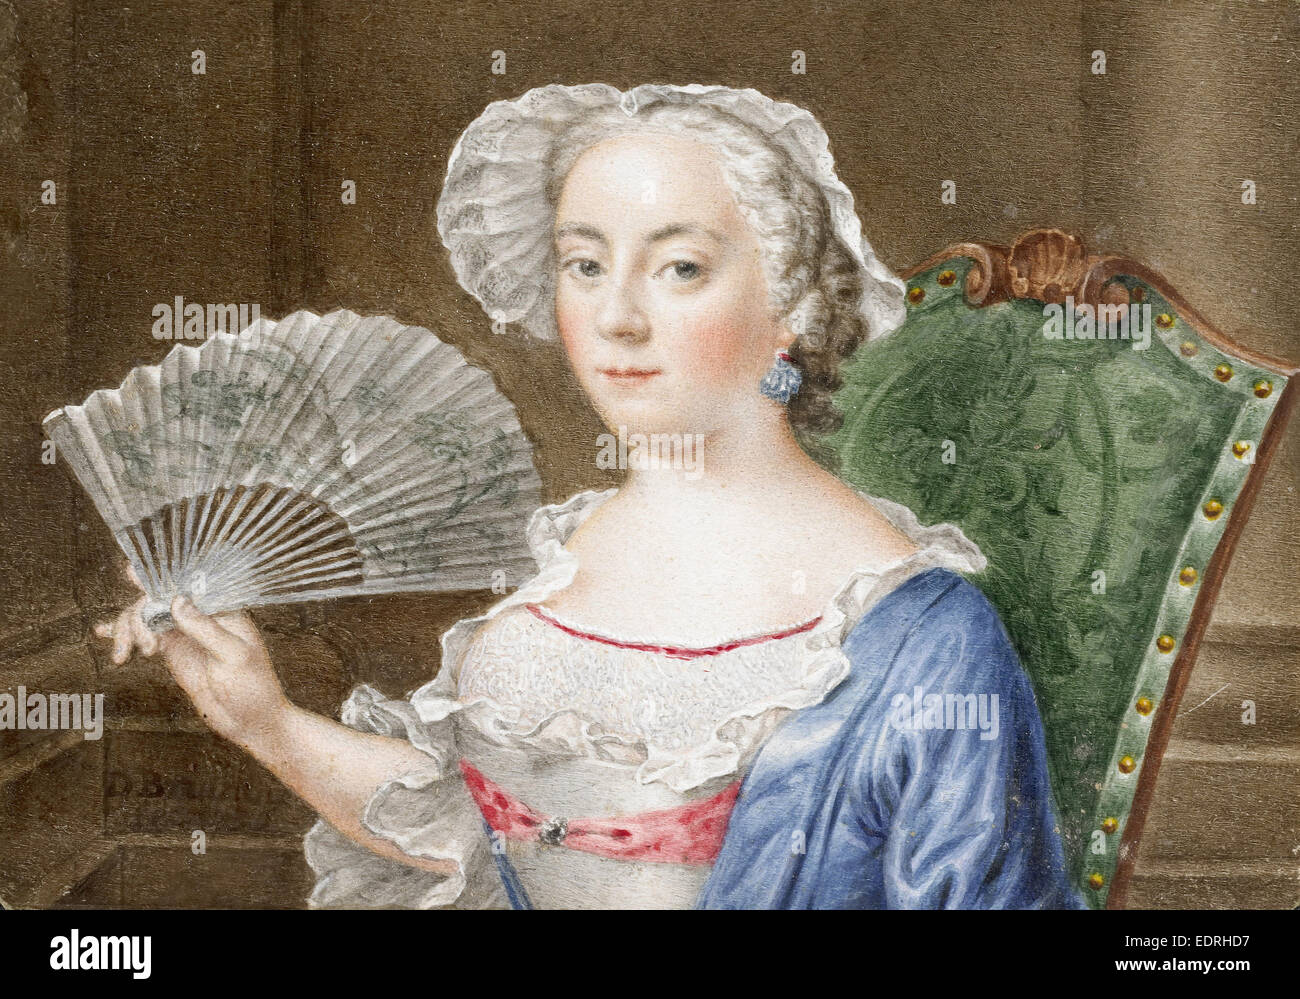 Ritratto di una donna con una ventola, Daniël Bruyninx, 1758 Foto Stock